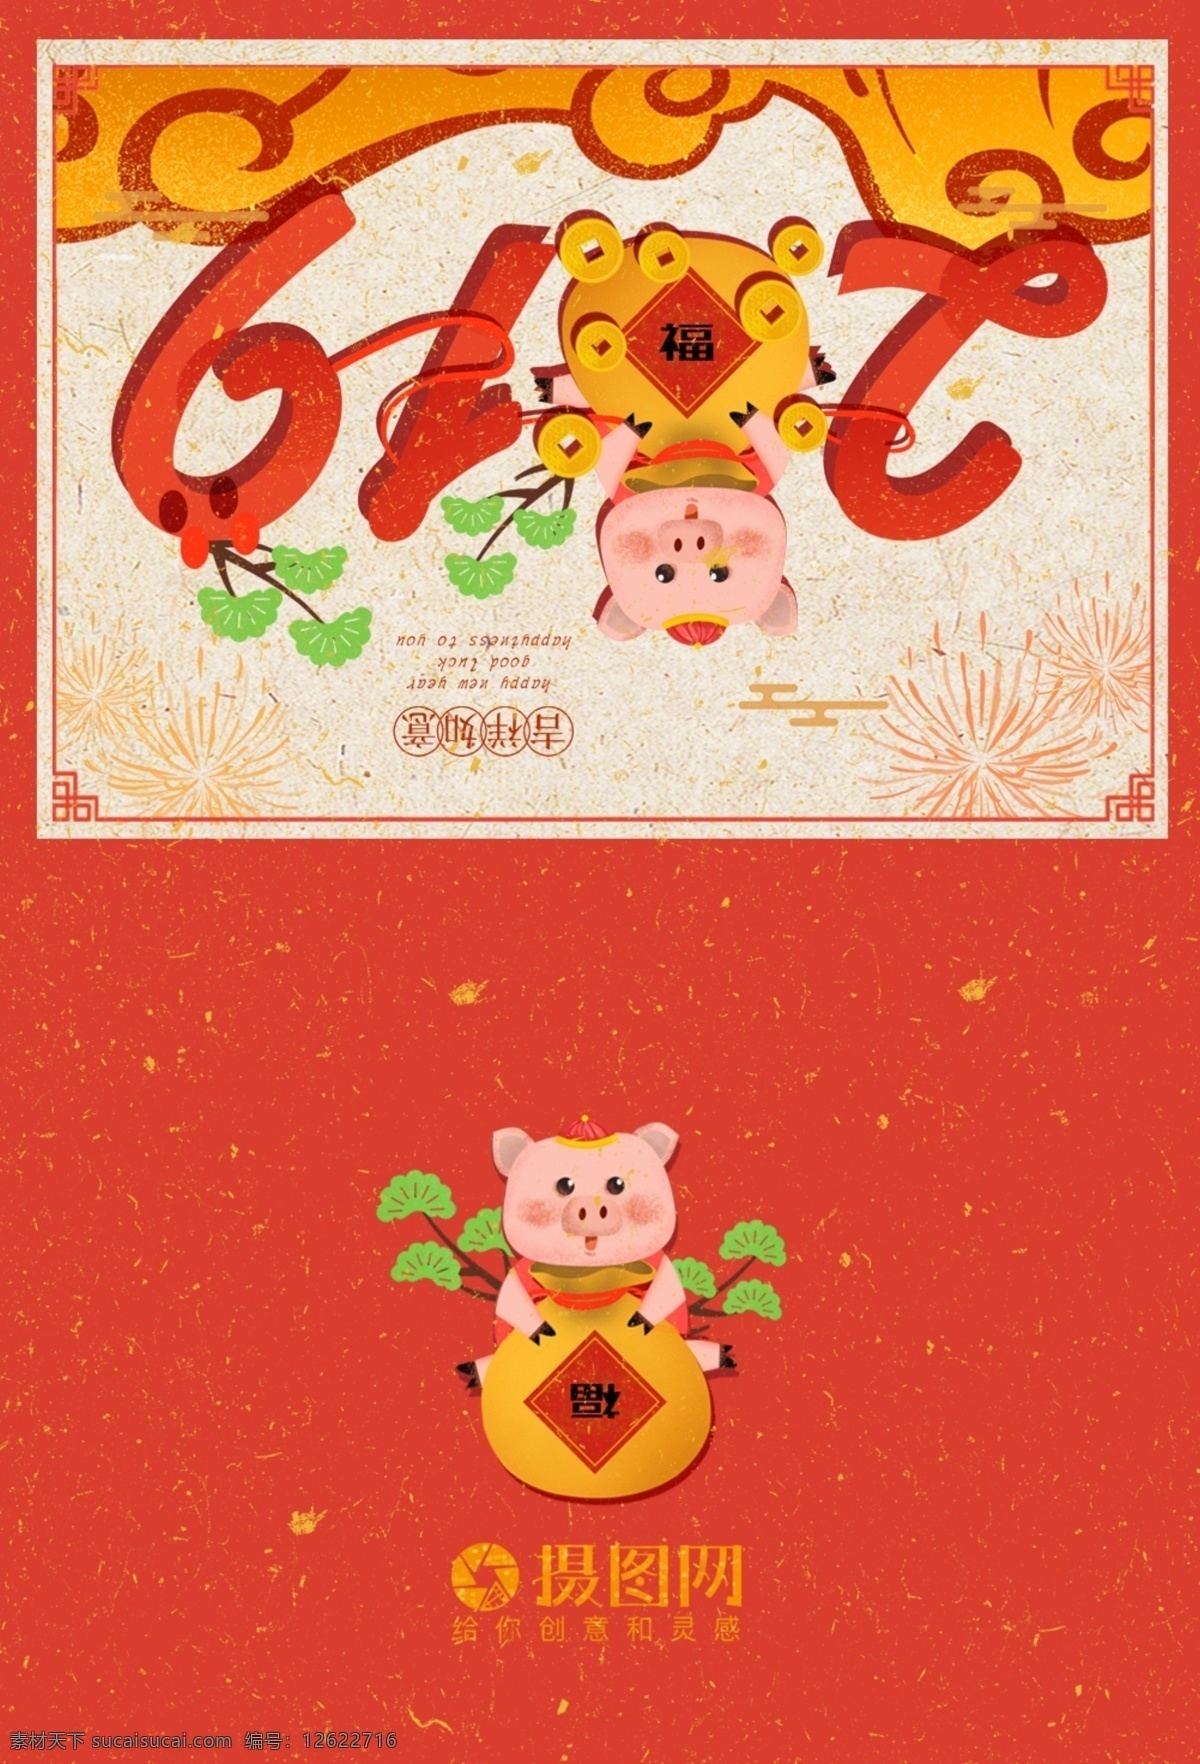 可爱 小 猪 新春 贺卡 贺卡设计 猪年 2019 新年 新春贺卡 祝福 红色 春节 节日贺卡